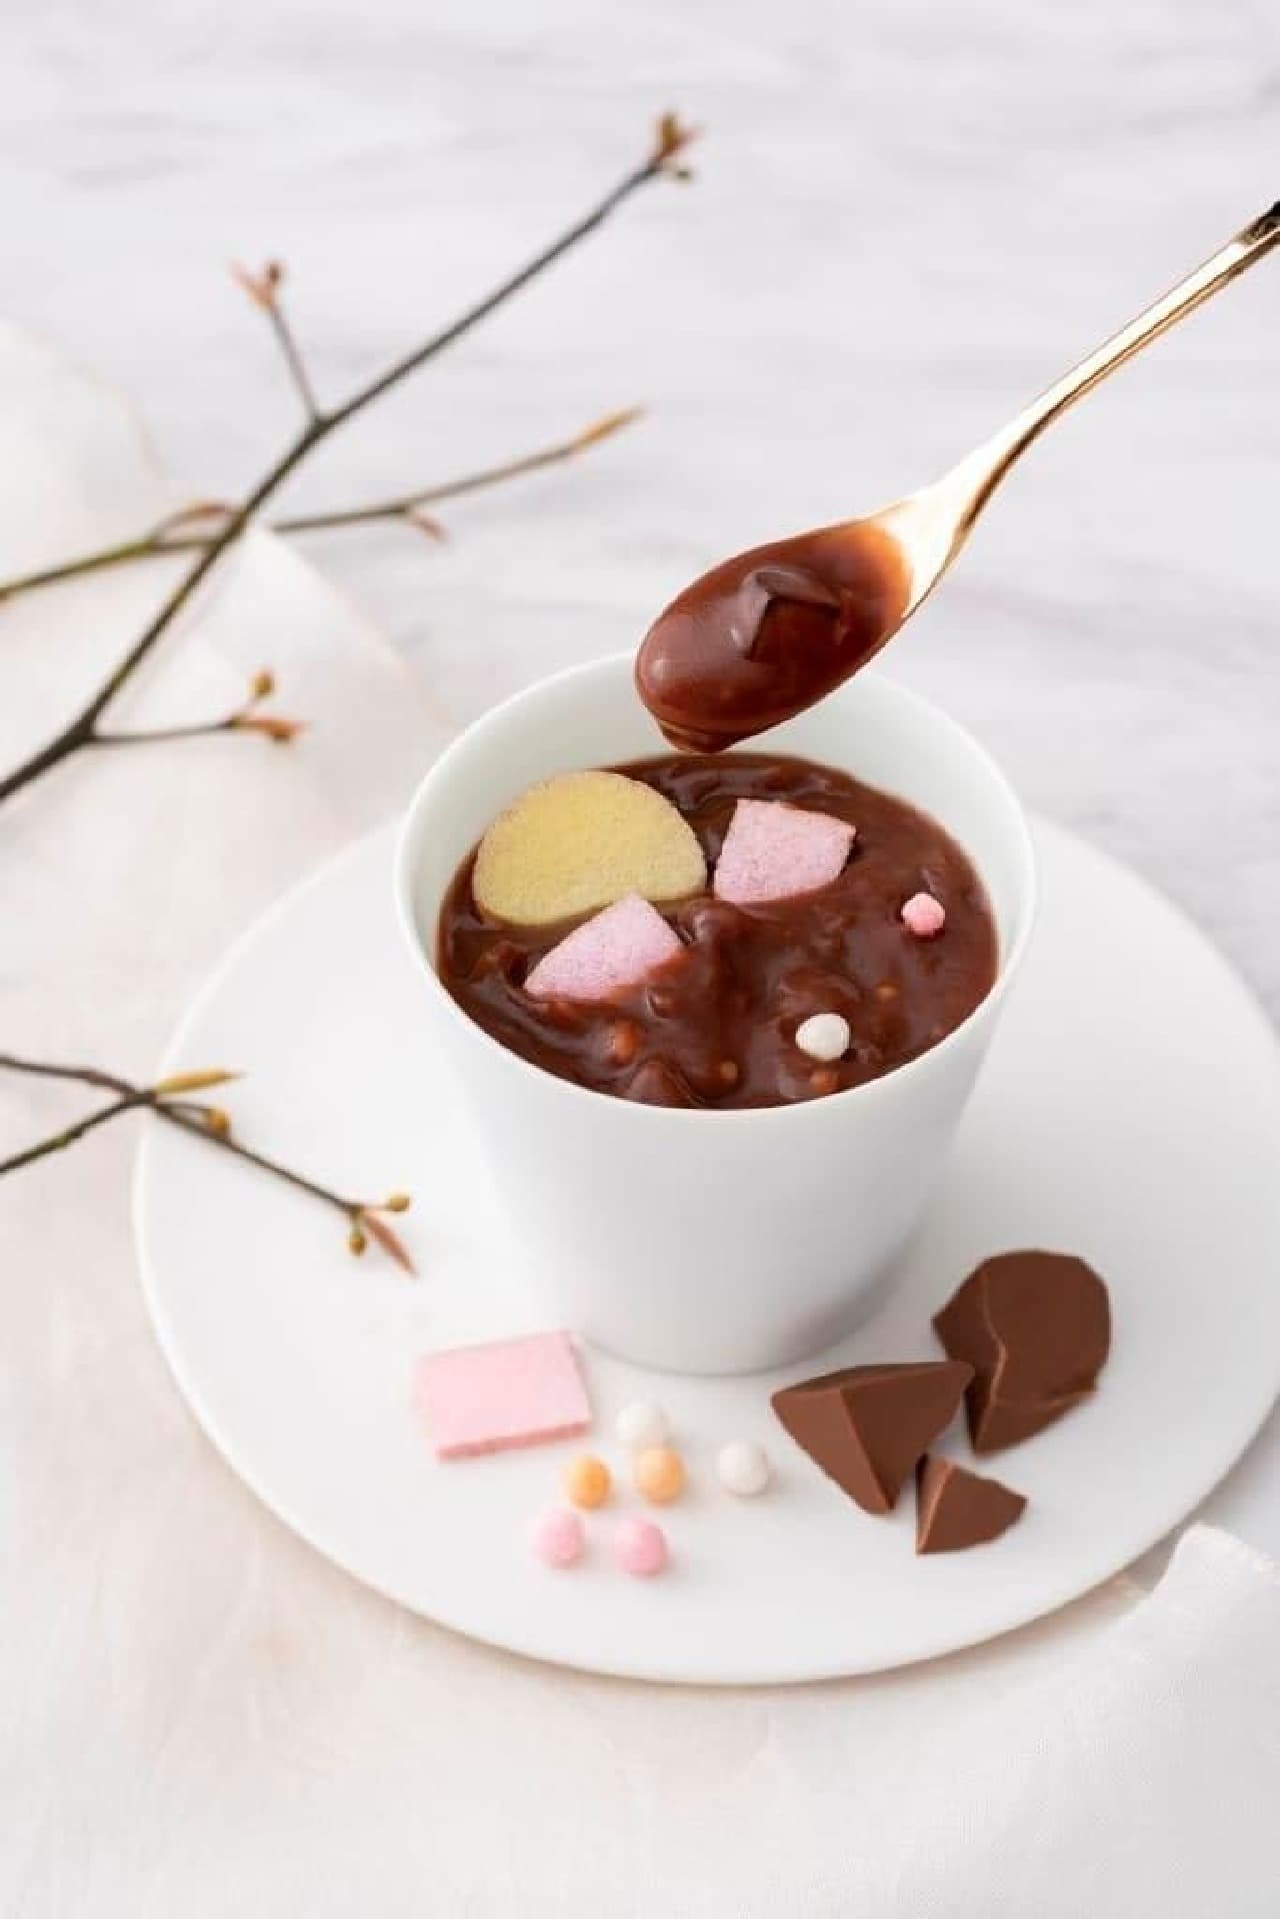 ゴディバ 2月1日和菓子老舗「俵屋吉富」とコラボした新商品「久寿湯 チョコレート」発売 画像1